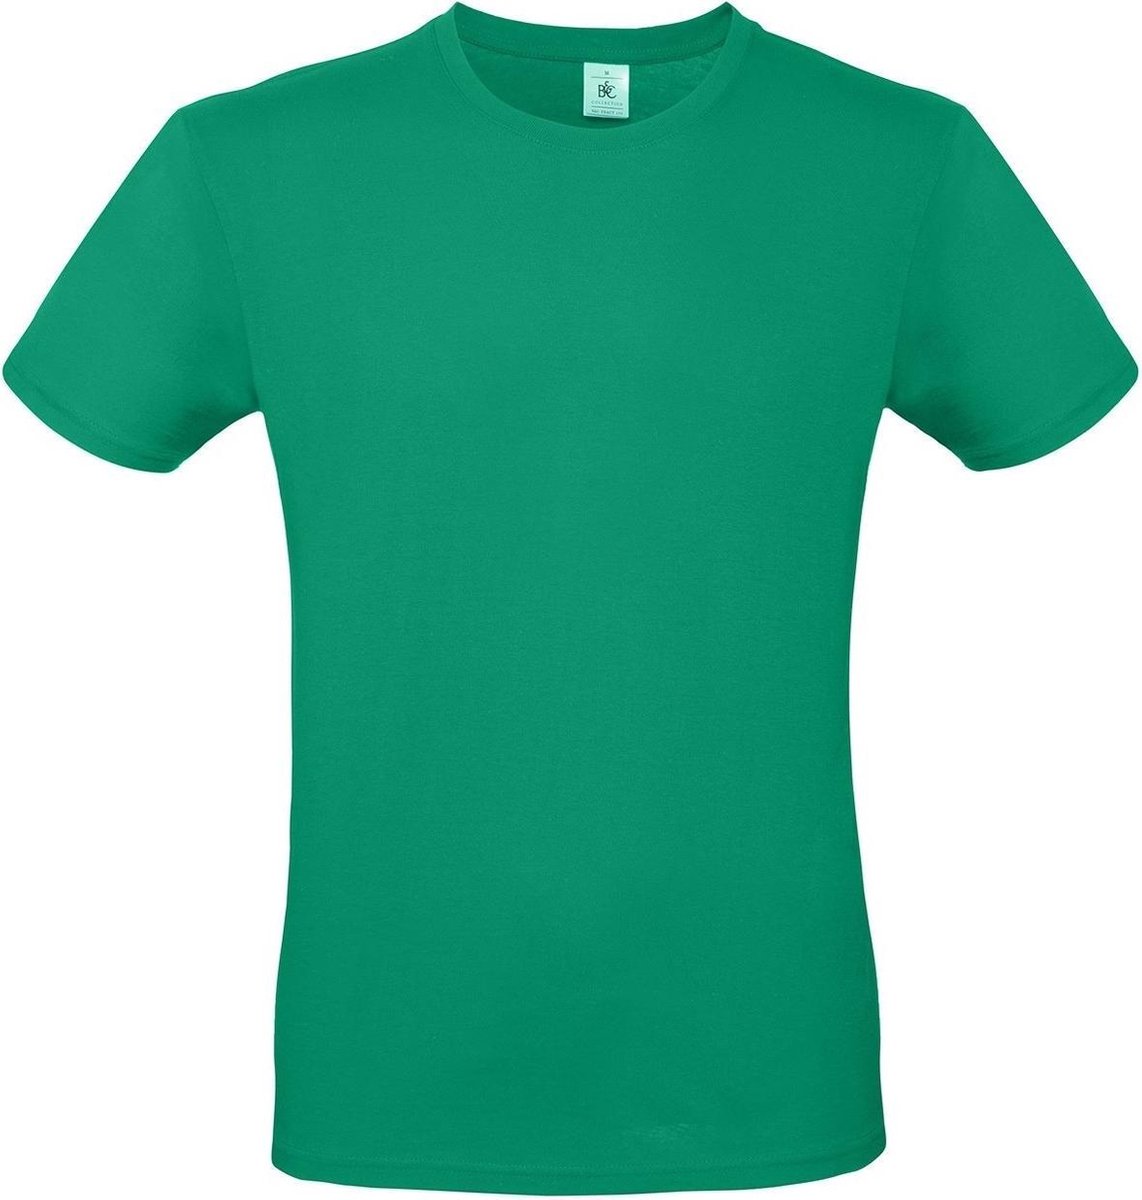 Set van 3x stuks groen basic t-shirt met ronde hals voor heren - katoen - 145 grams - groene shirts / kleding, maat: M (50)